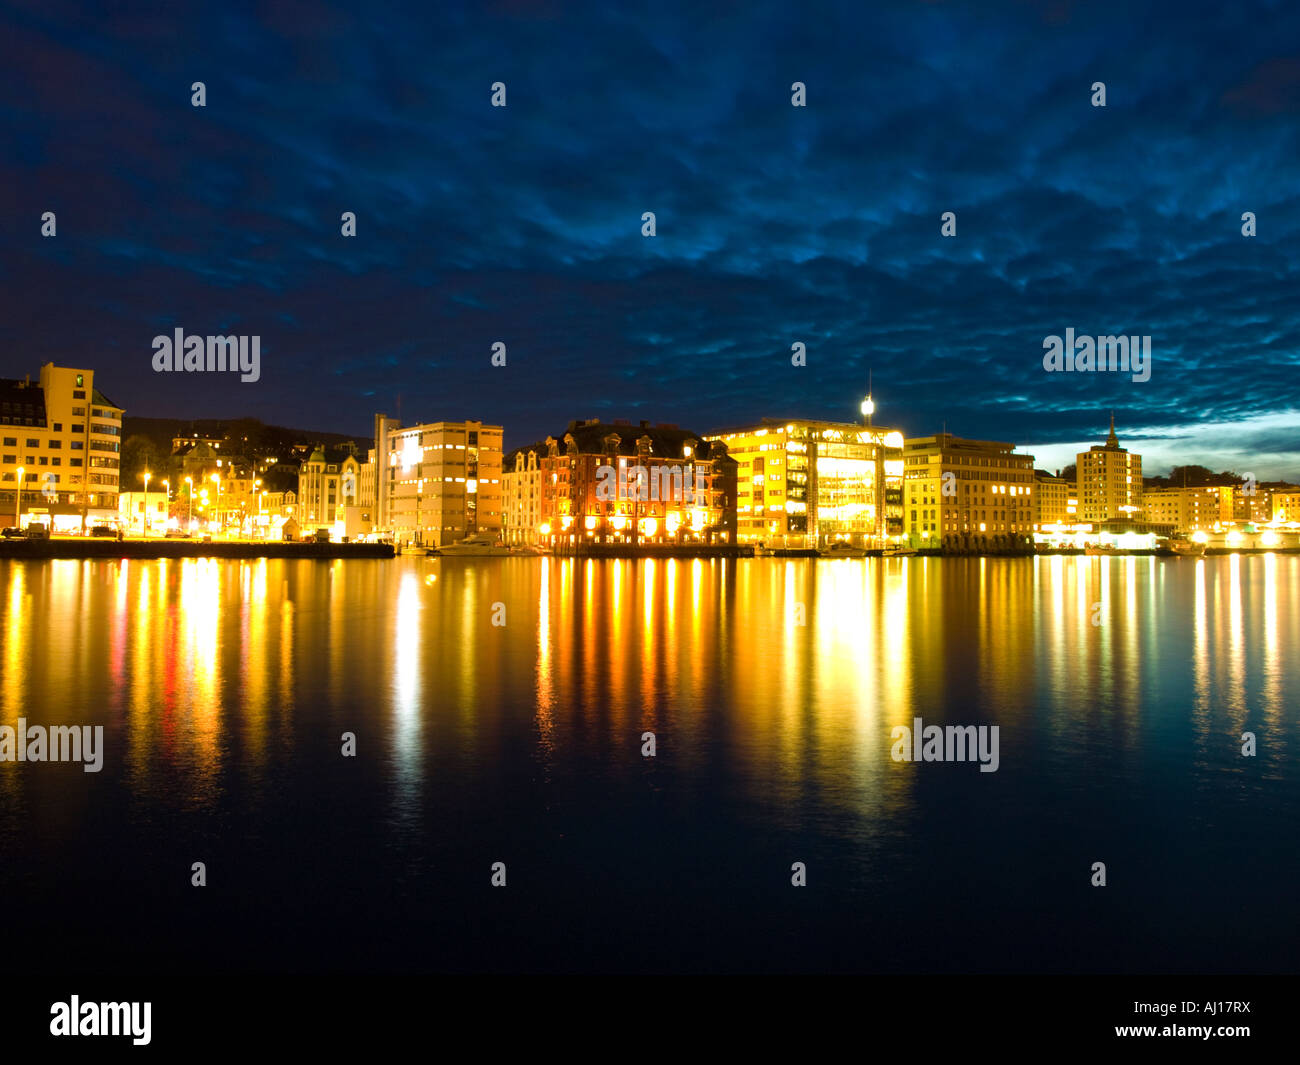 The brilliant night lights of Vågen in Bergen, Norway. Stock Photo